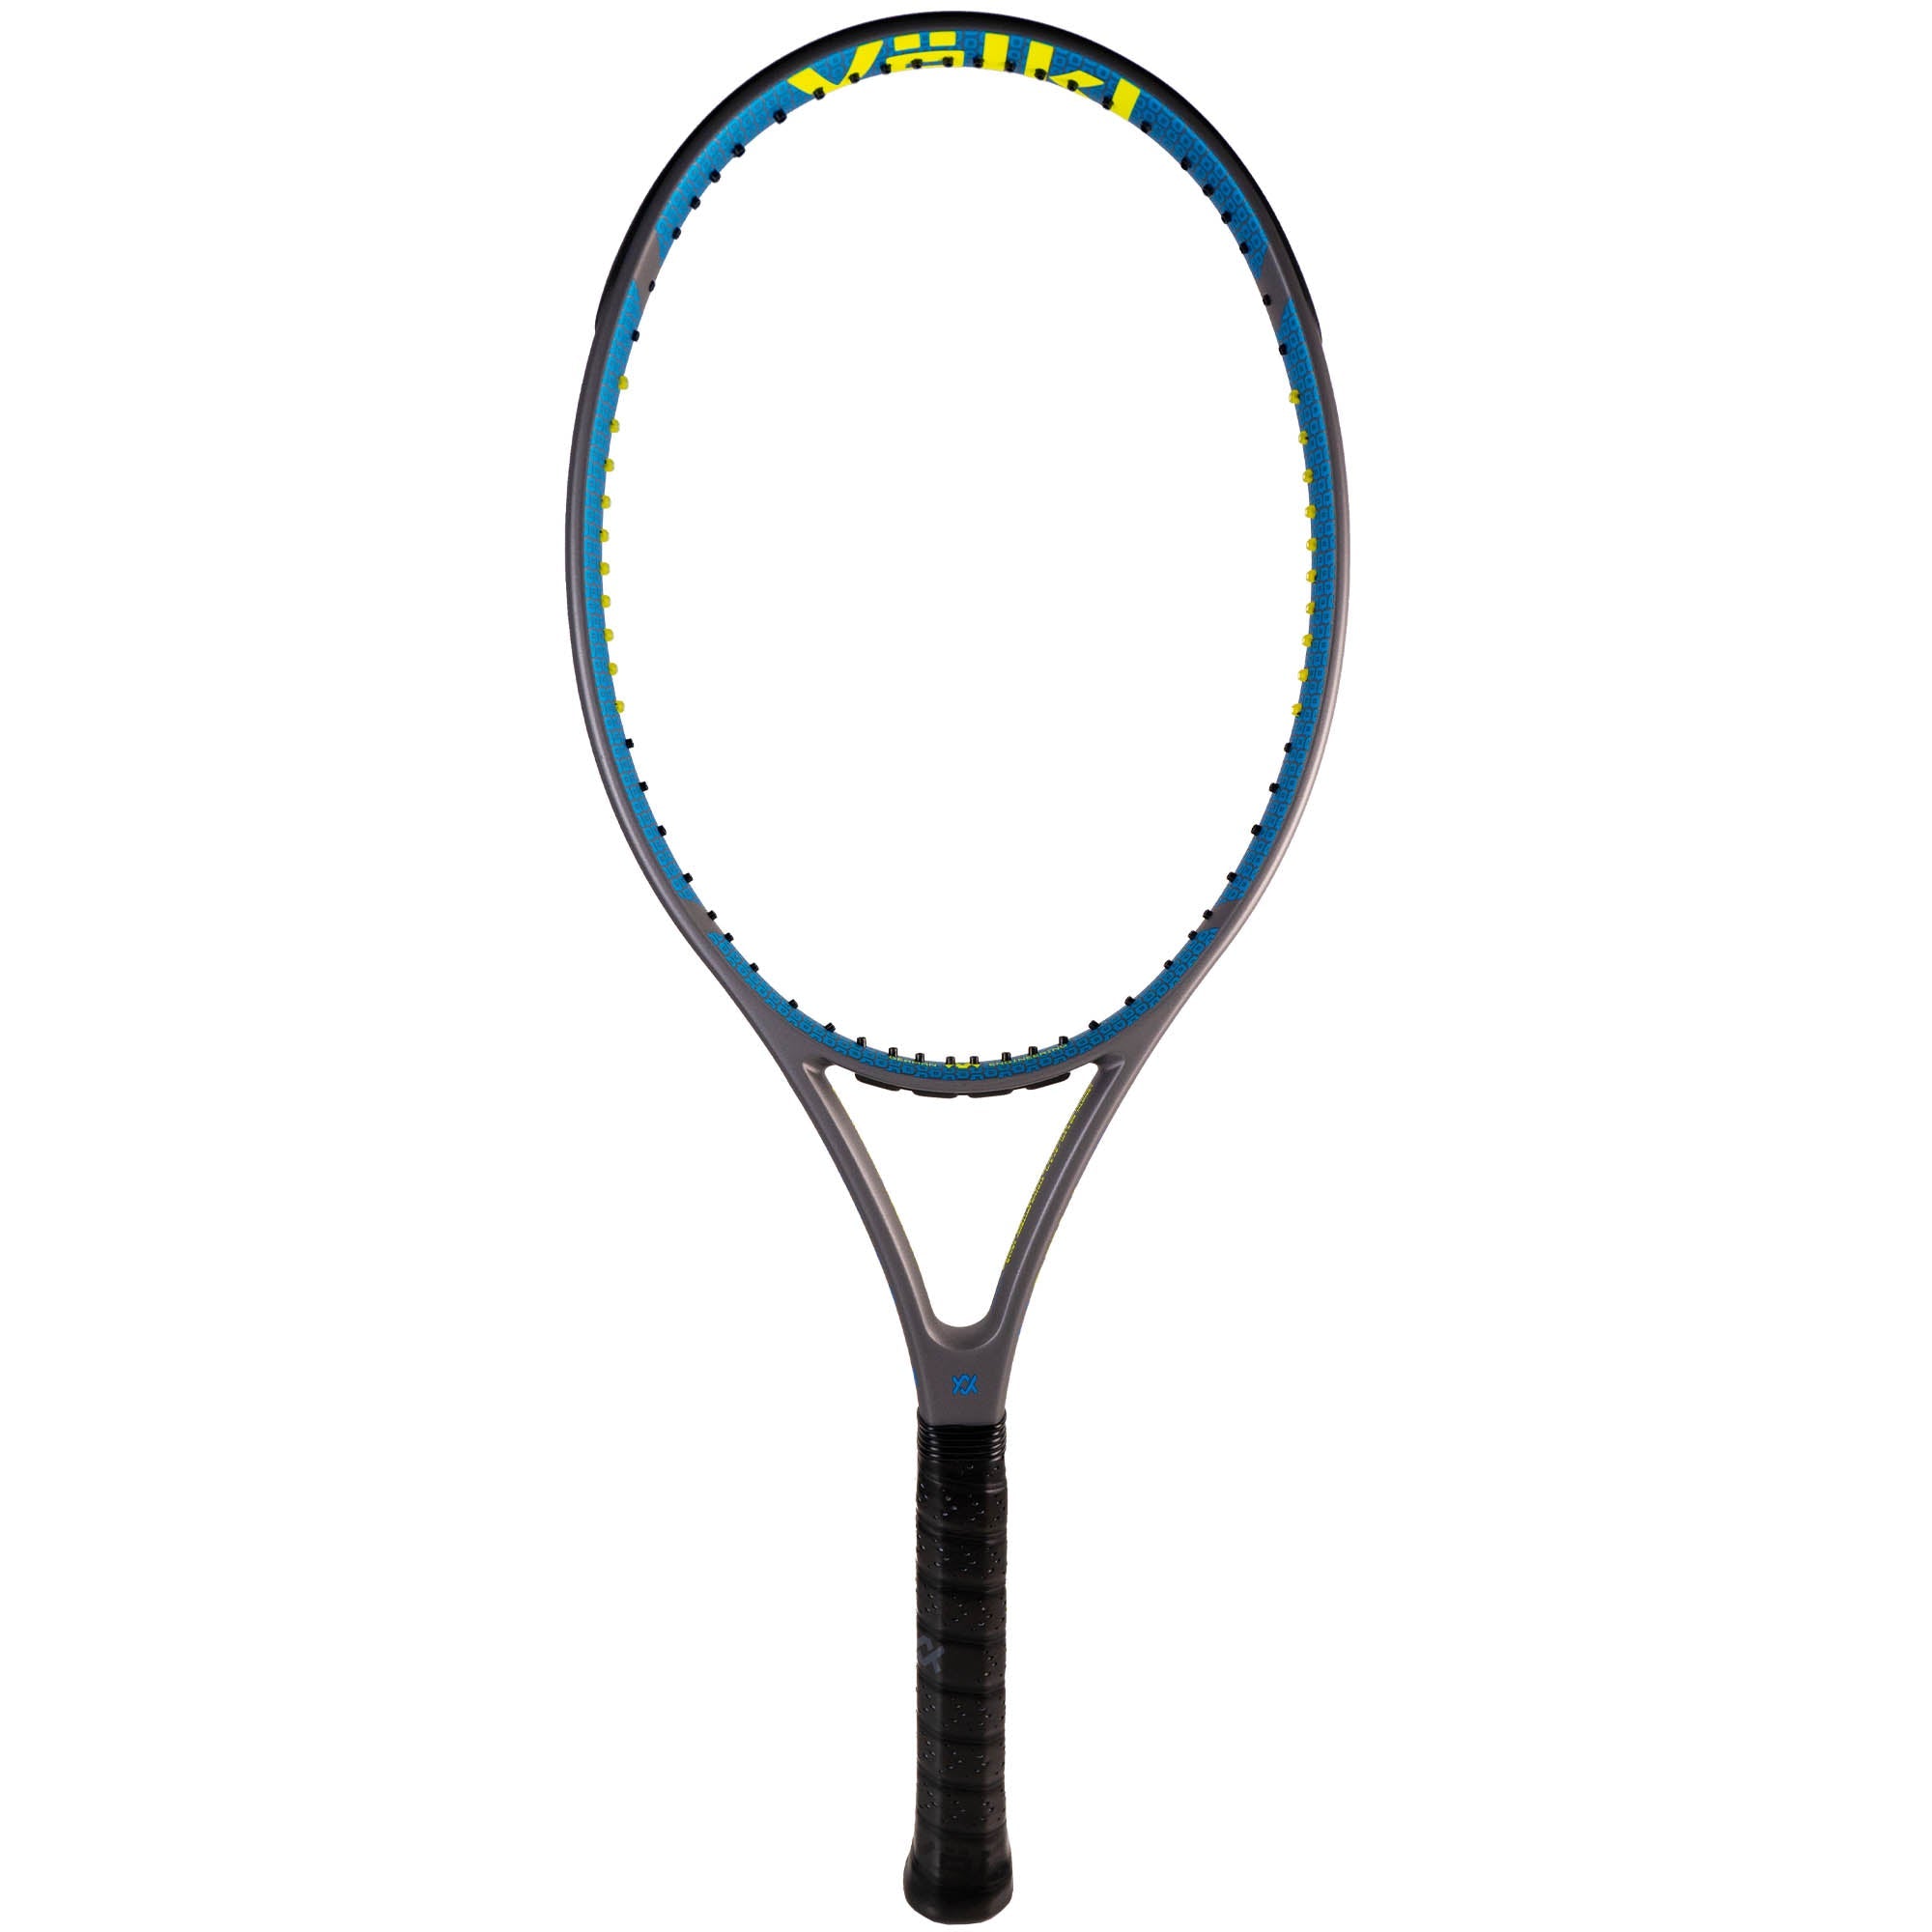 Volkl V-Cell 7 Tennis Racket